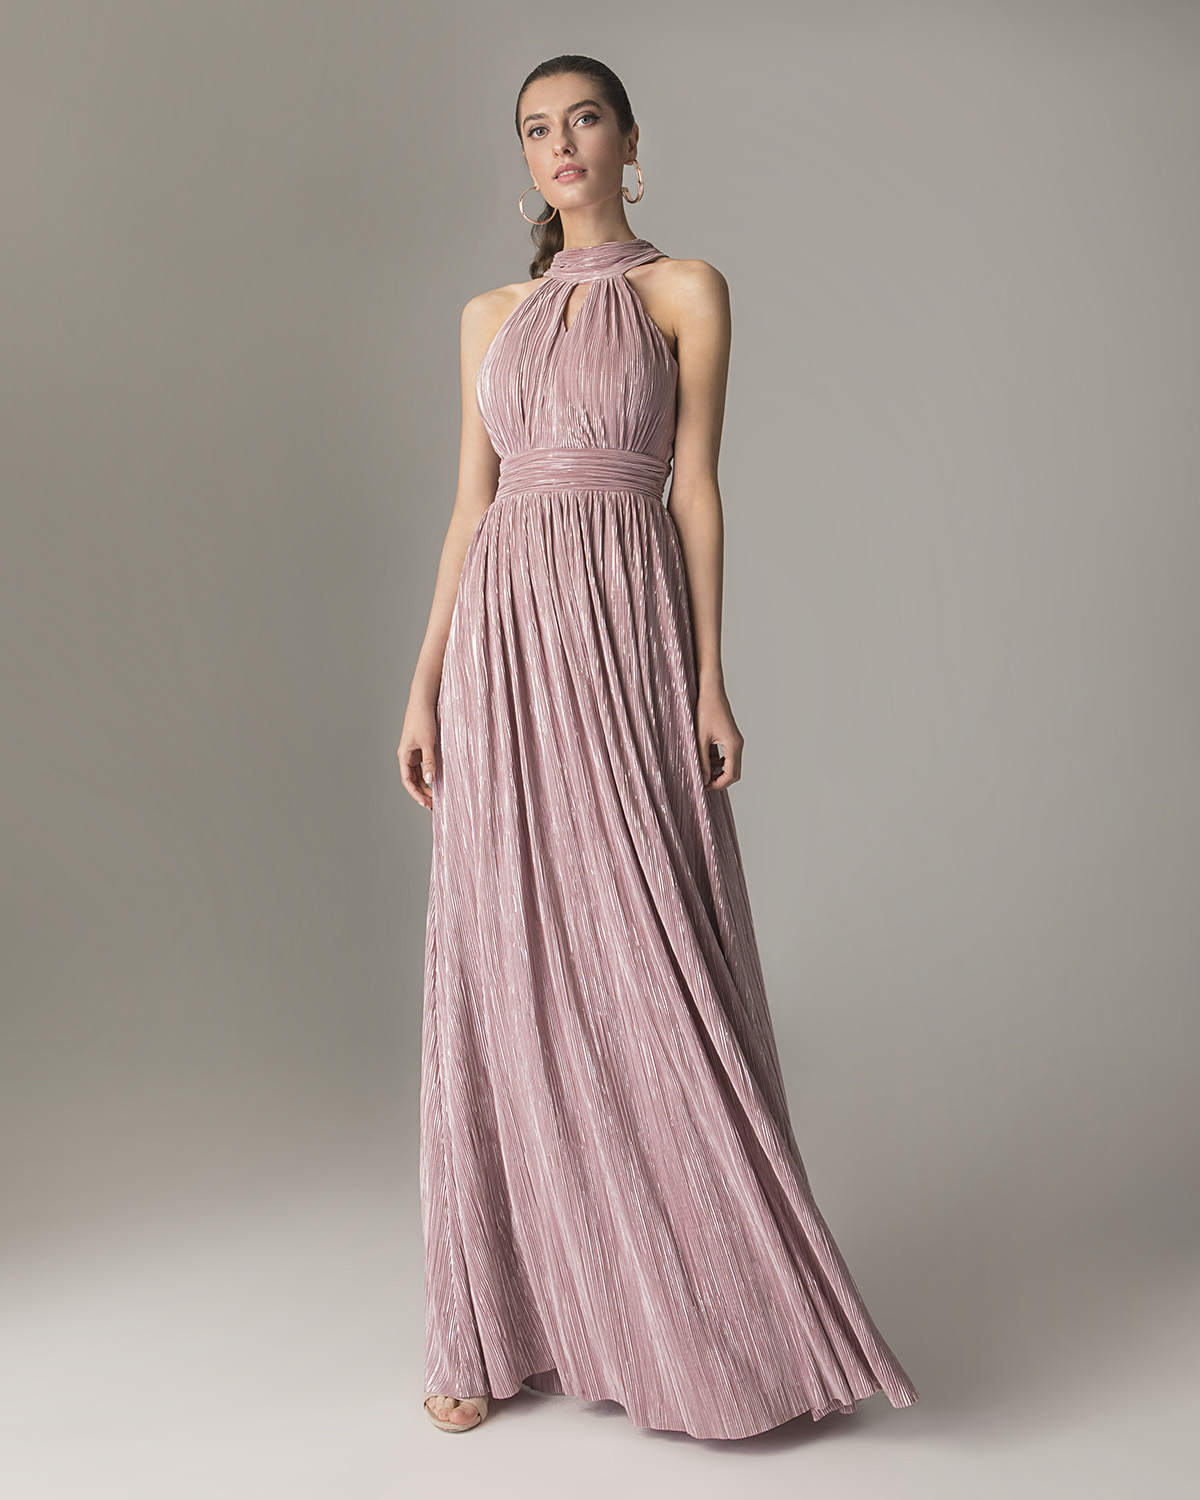 Коктейльные платья / Long cocktail dress with lurex fabric